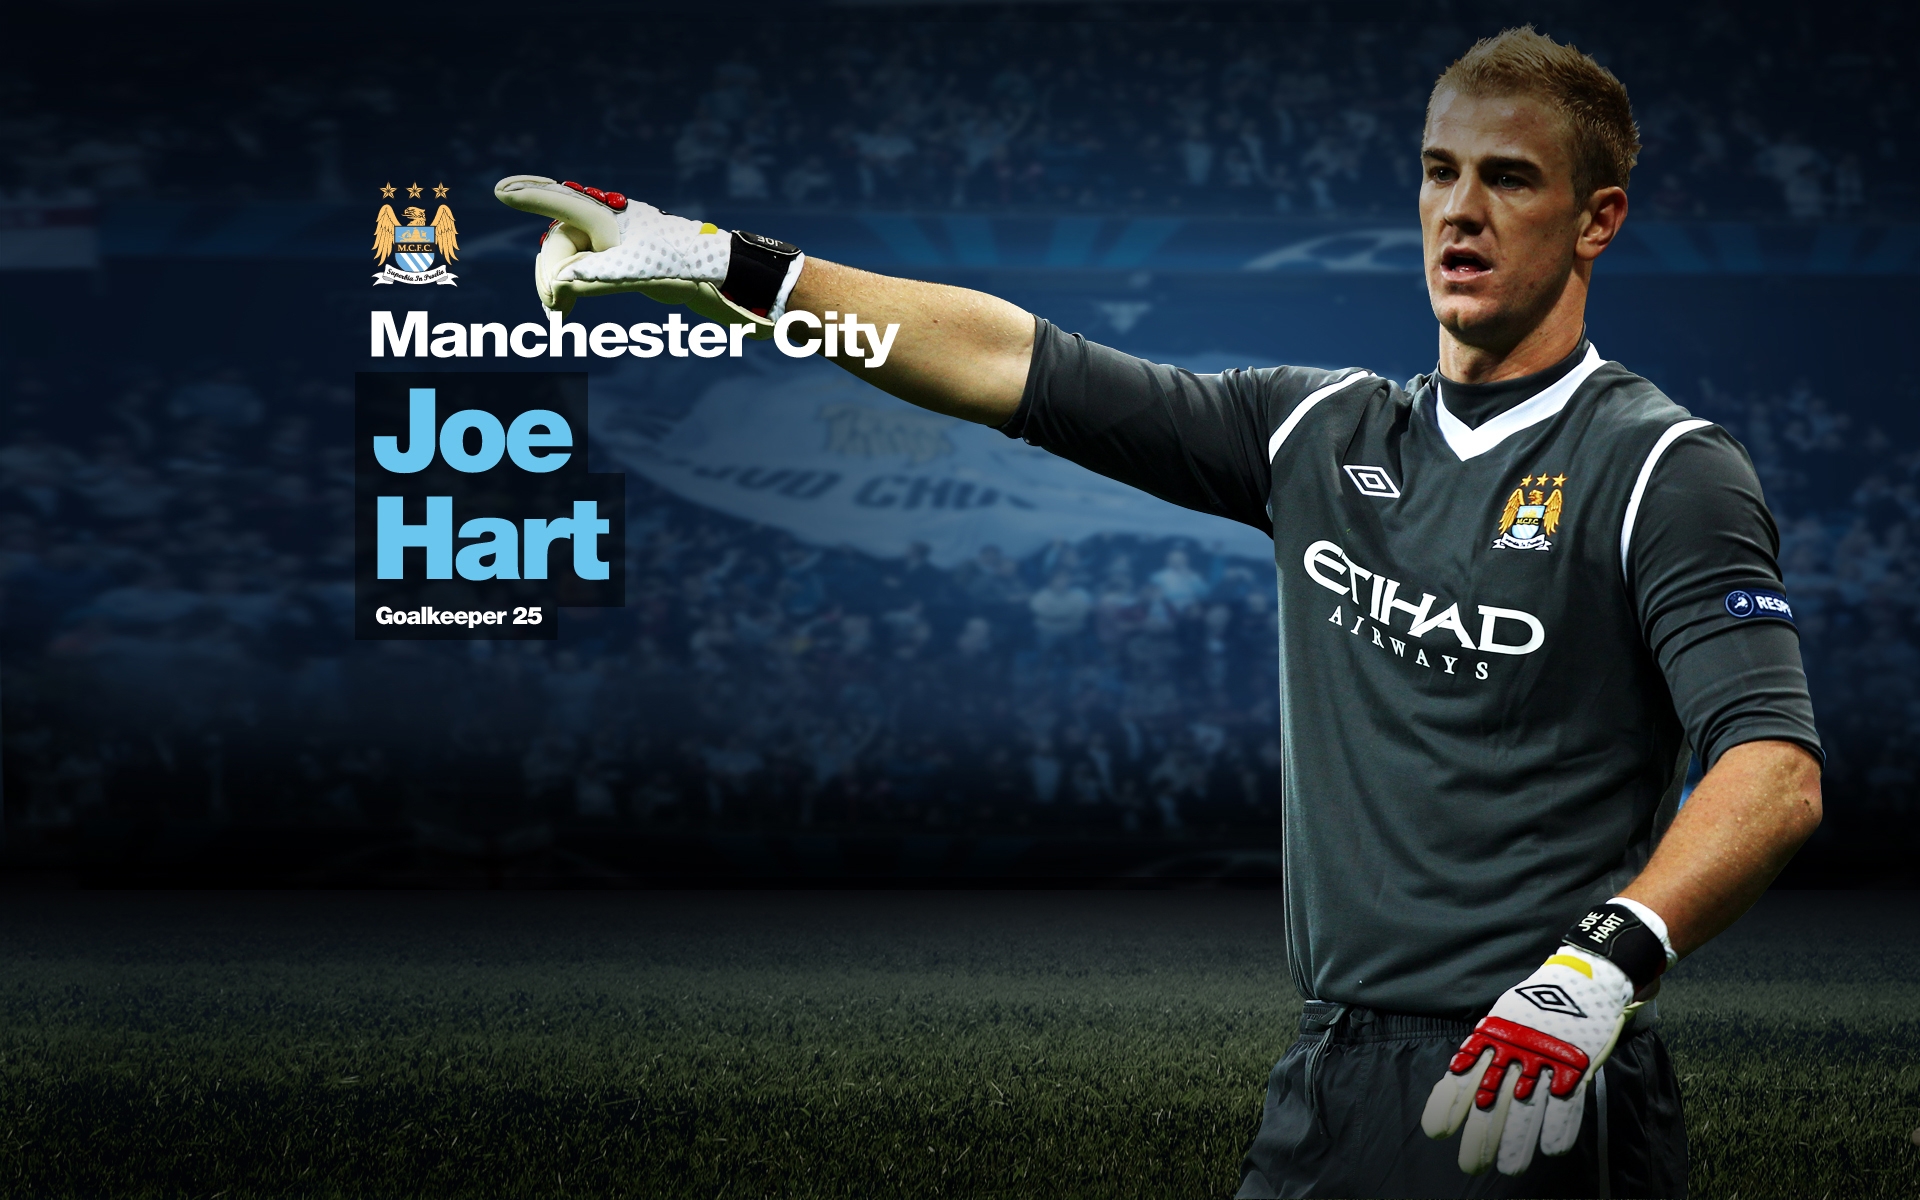 Joe Hart Manchester City Wallpaper Cool